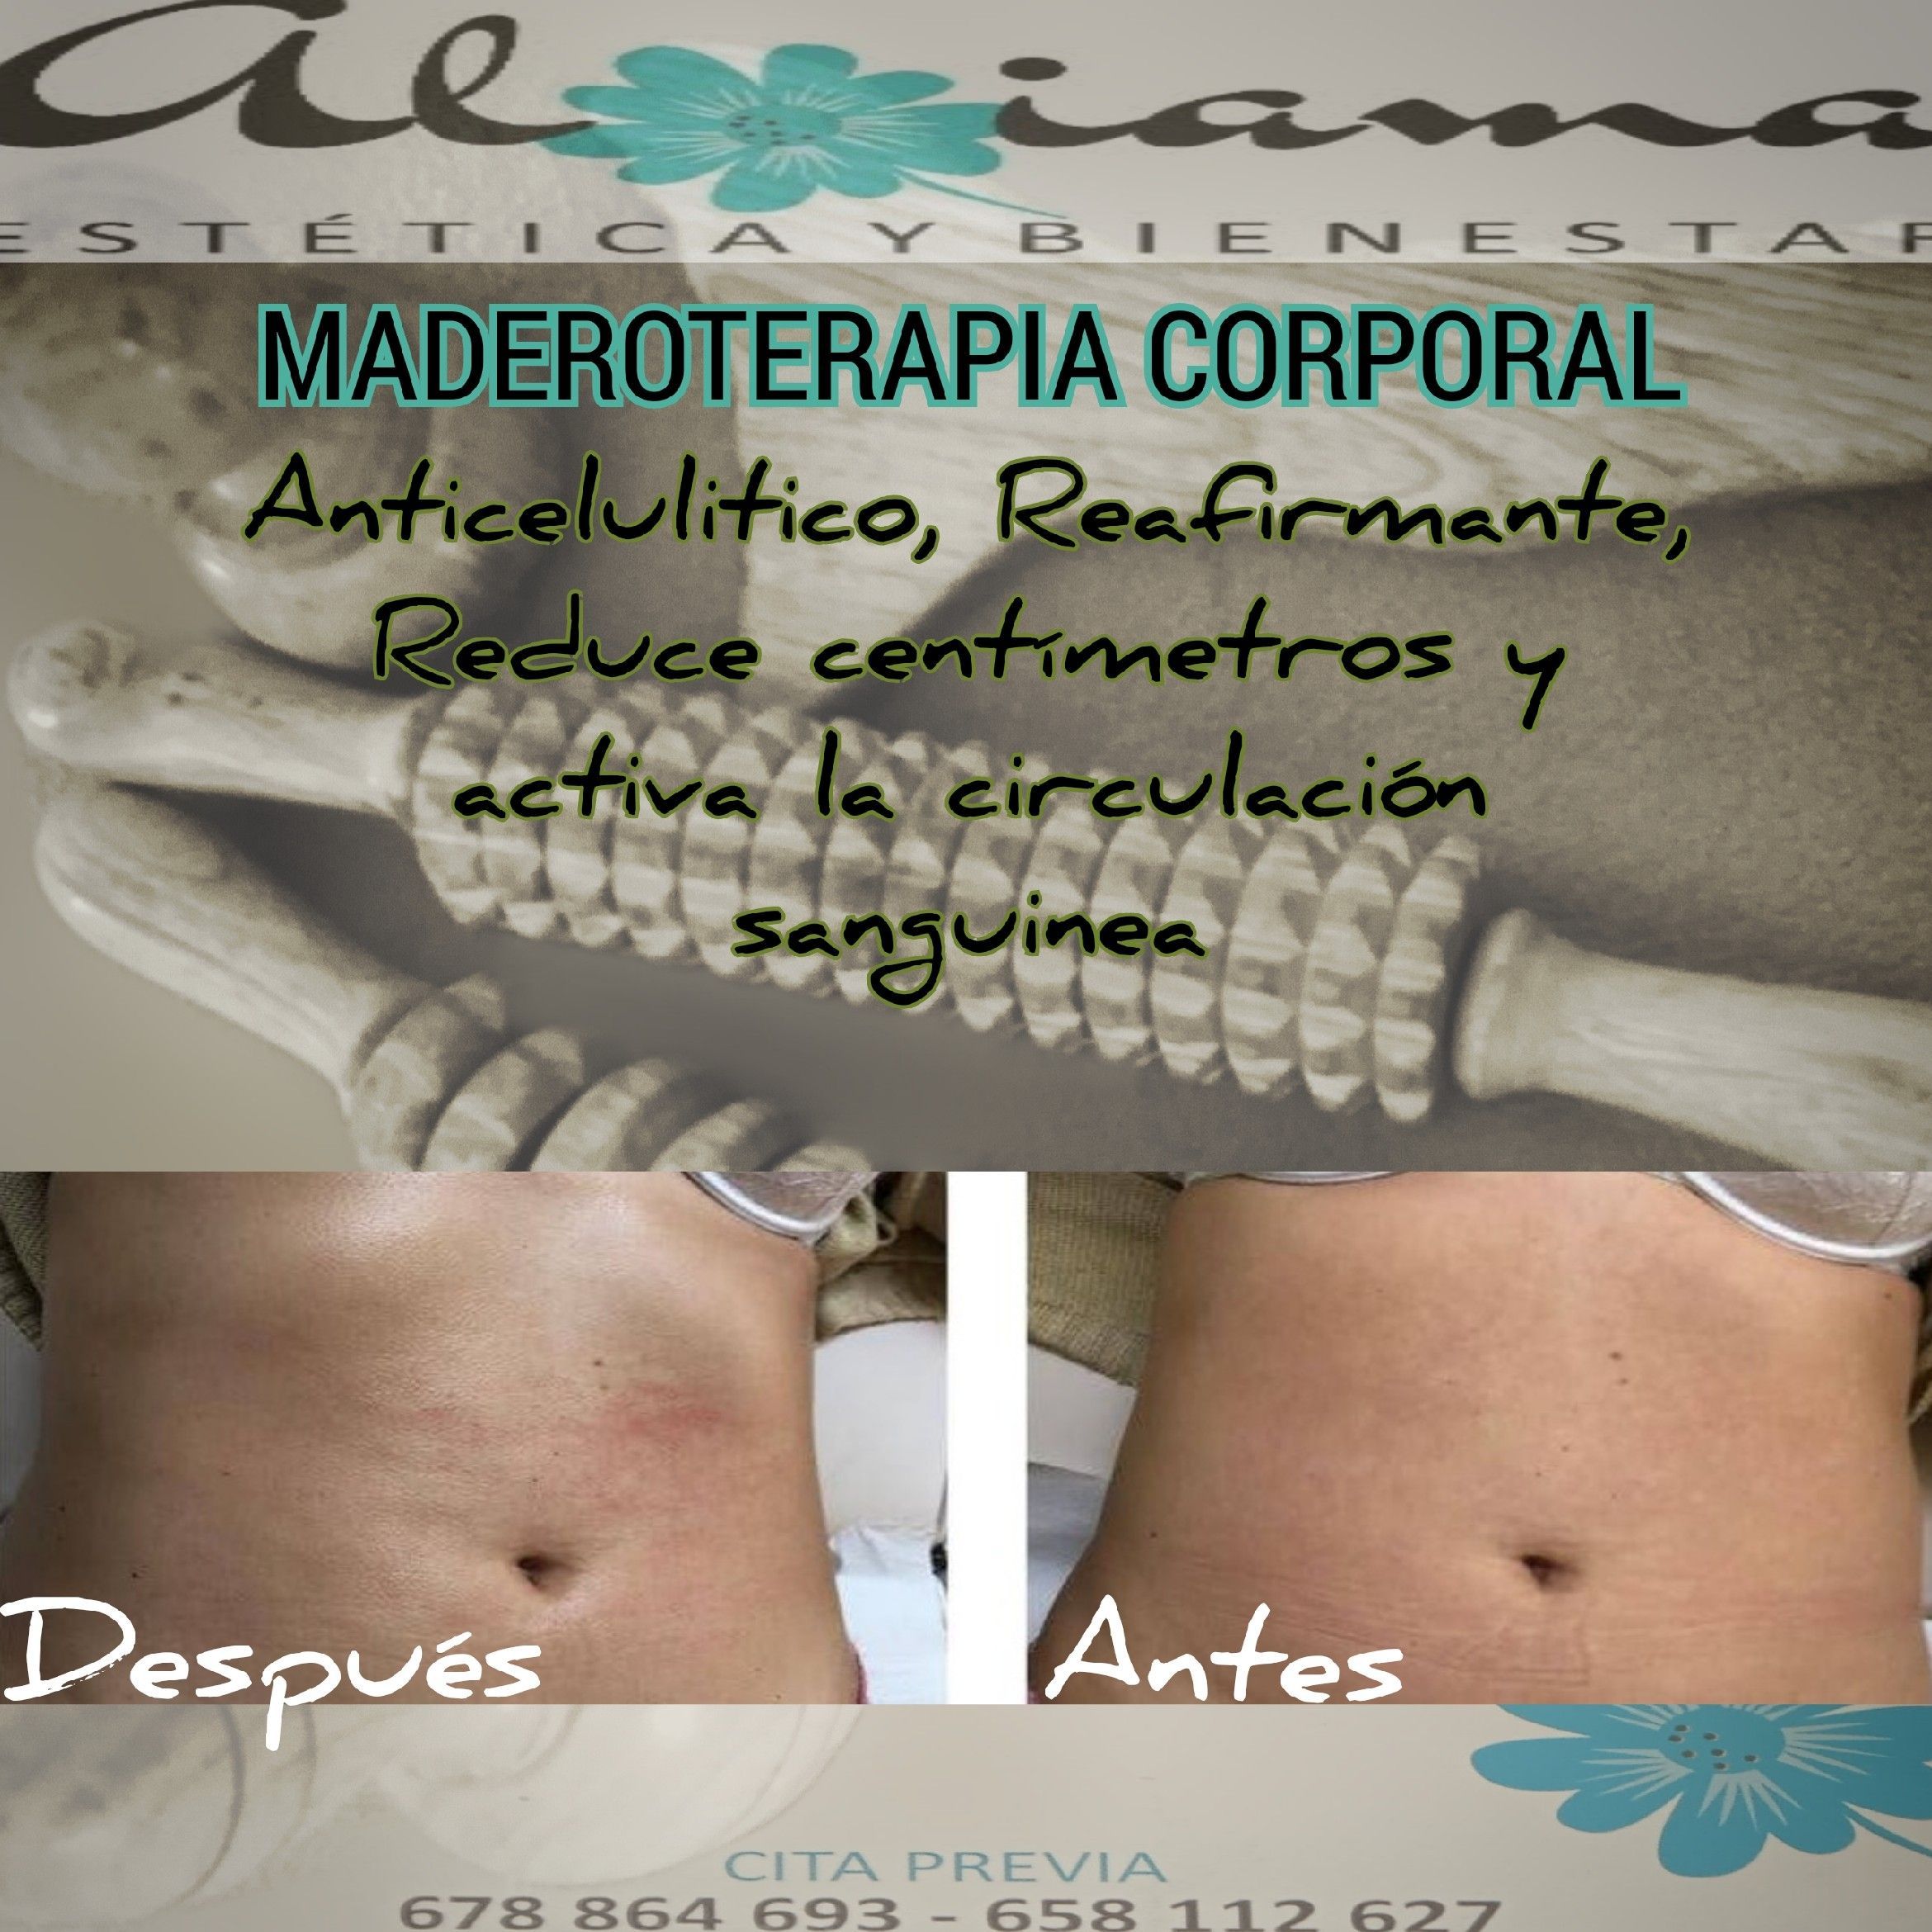 Maderoterapia Corporal portfolio